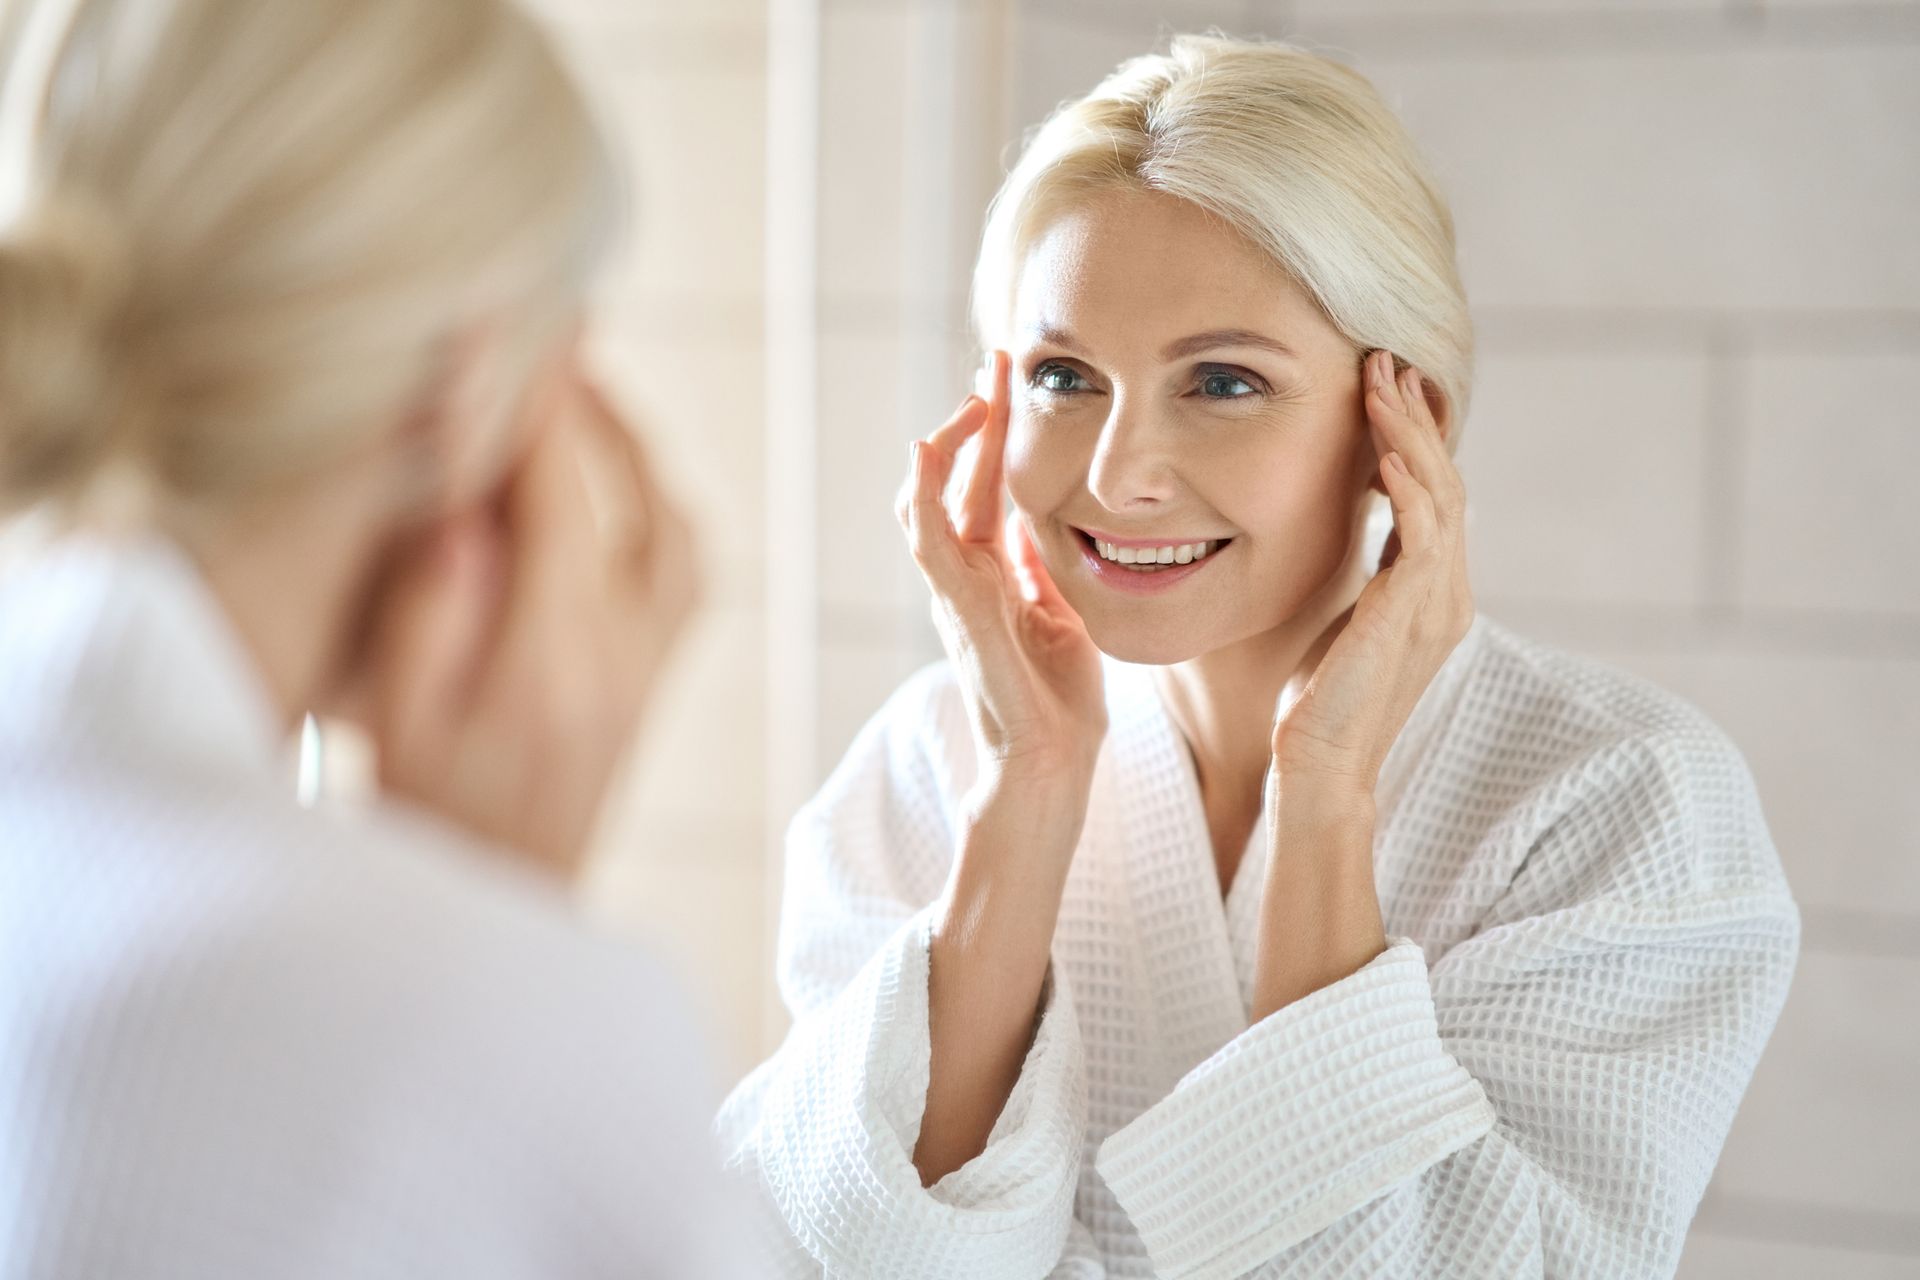 Atenuar as rugas e promover a  vitalidade da pele são alguns dos benefícios da Harmonização Orofacial.